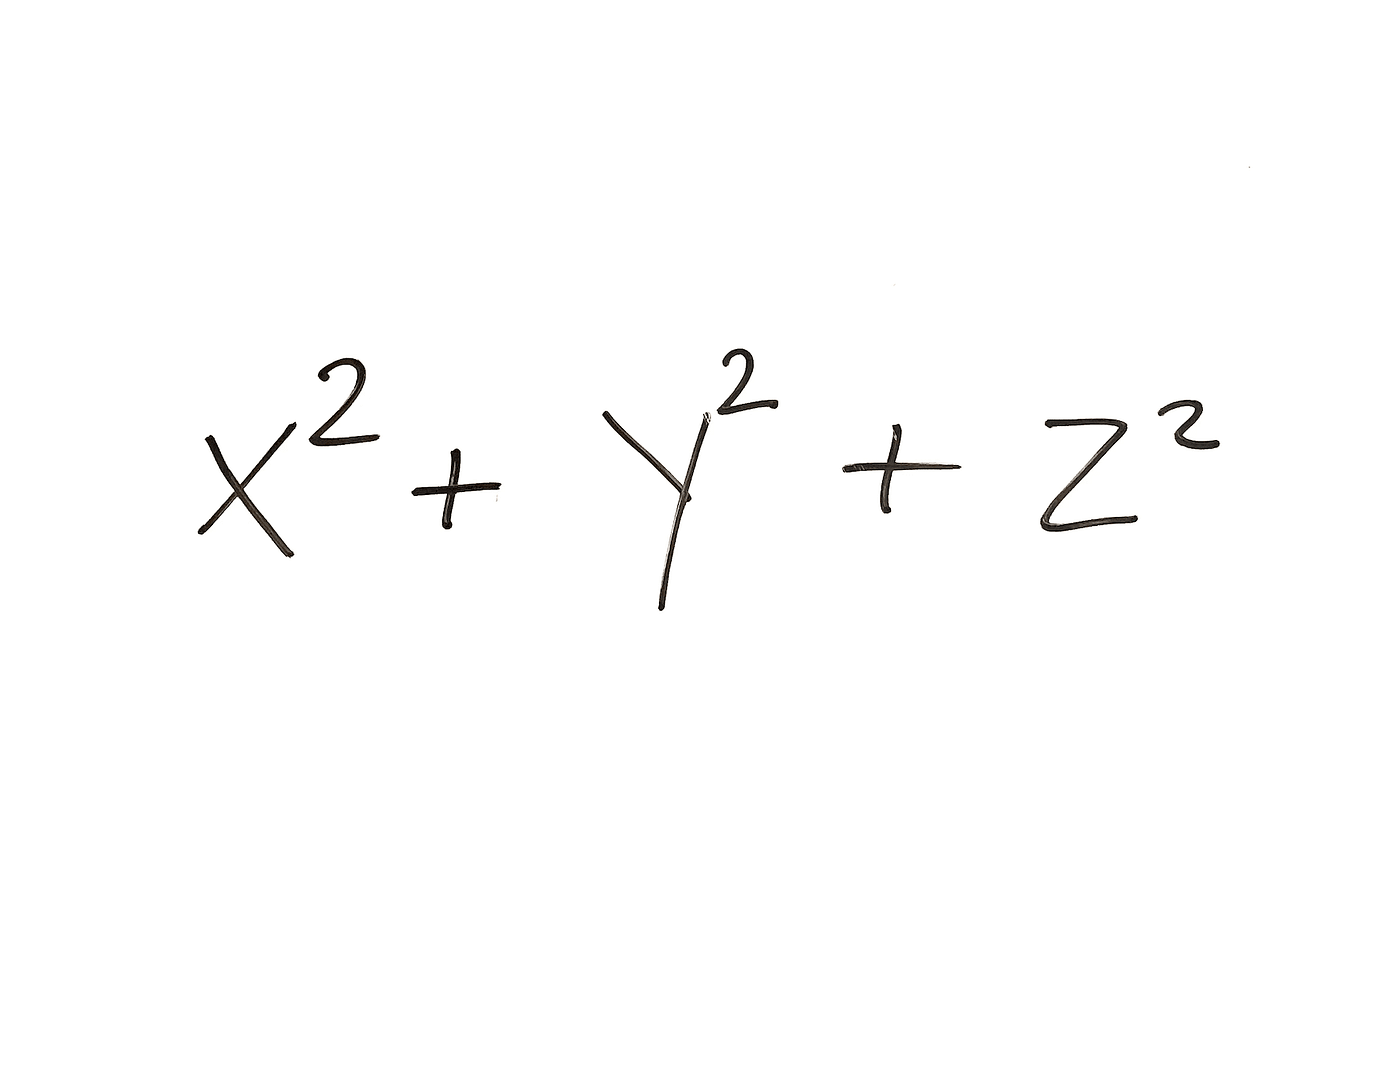 Lagrange's four-square theorem 